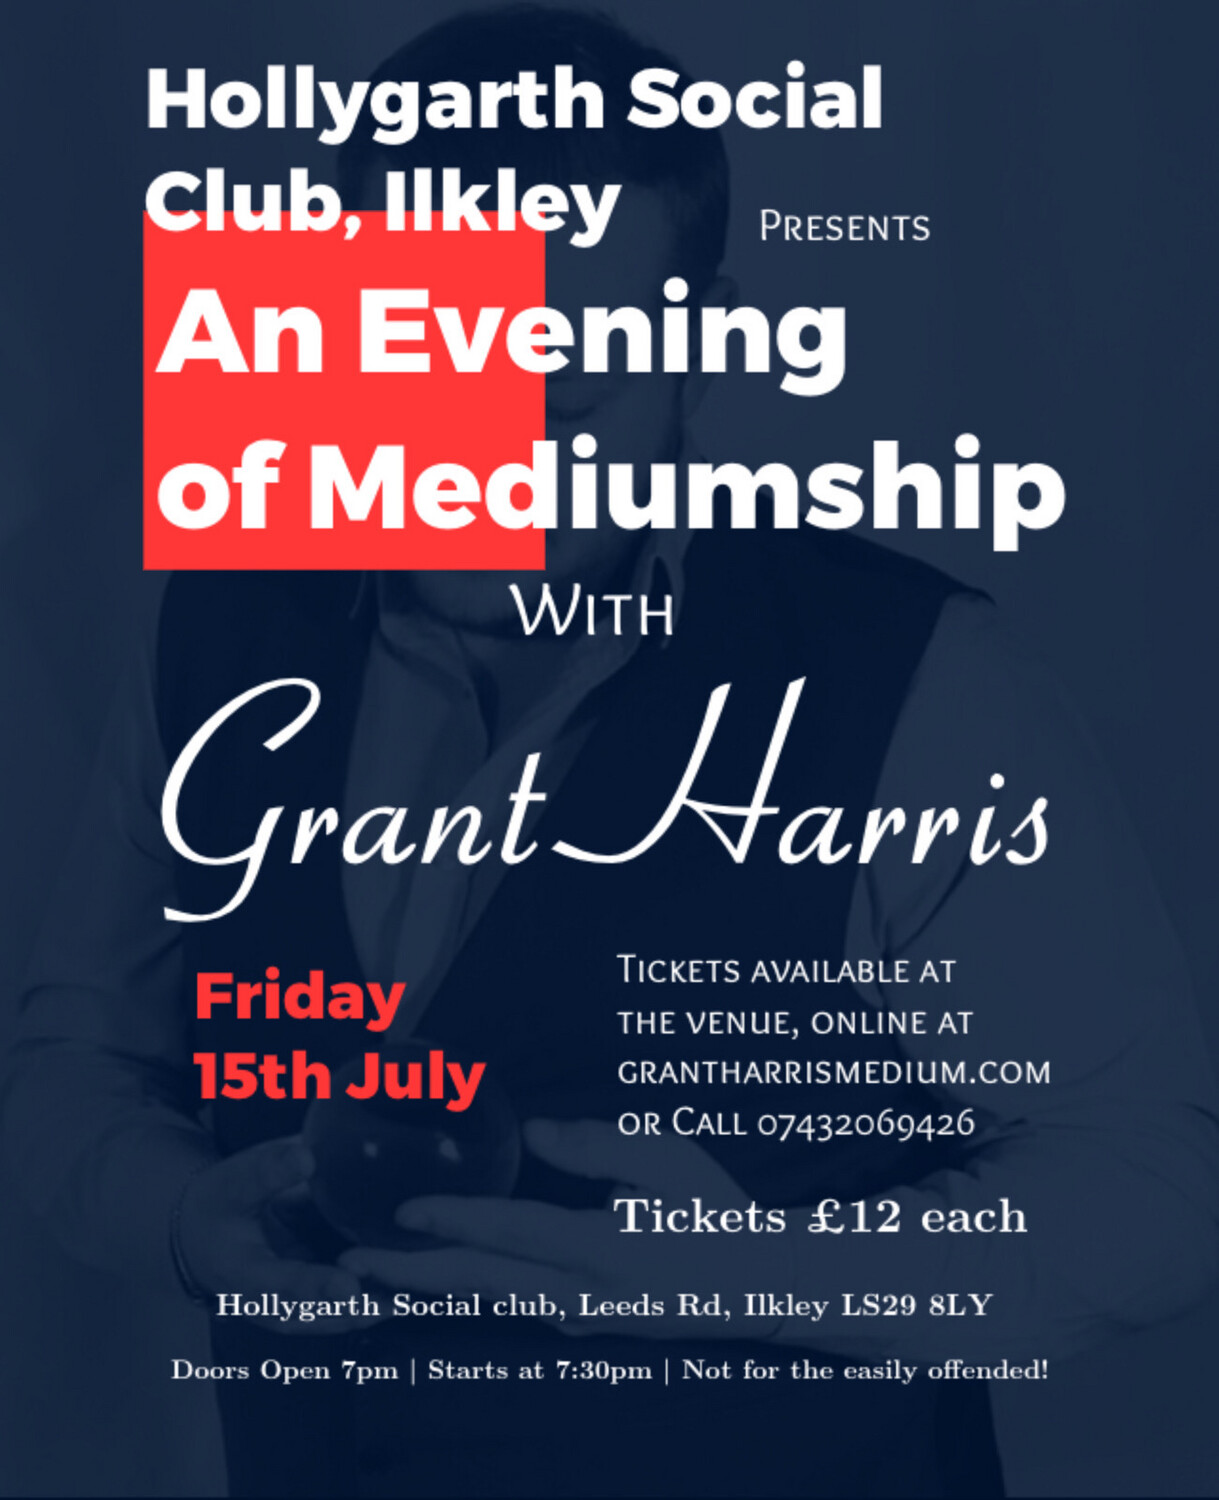 Evening of Mediumship, Hollygarth Social Club, Ilkley, Fri 15th July 2022